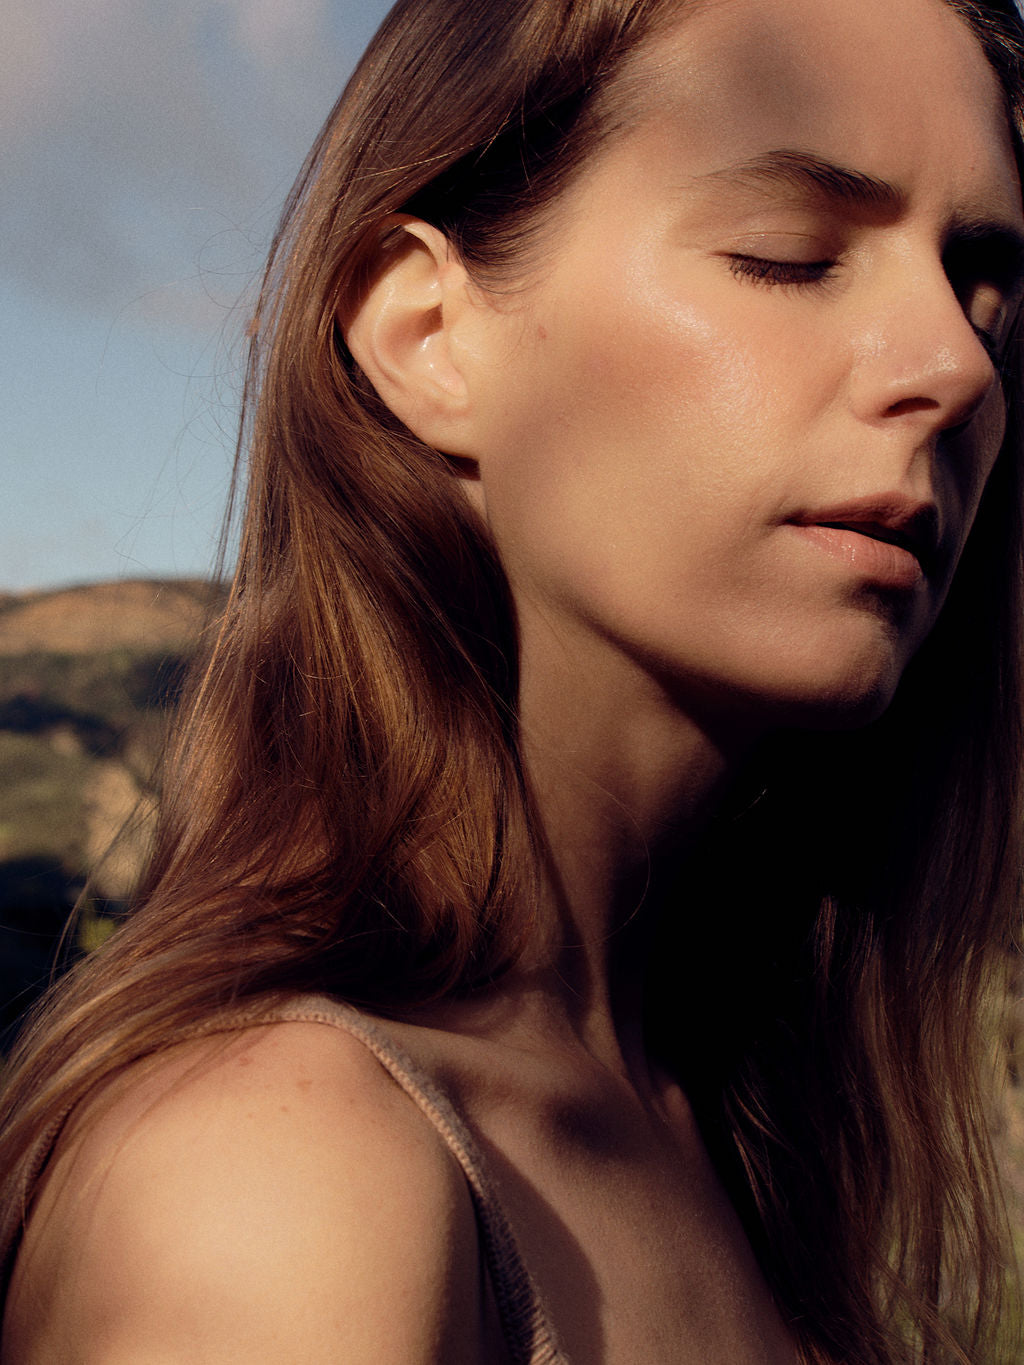 Victoria in the sun, shot by Chelsea Ruggiero